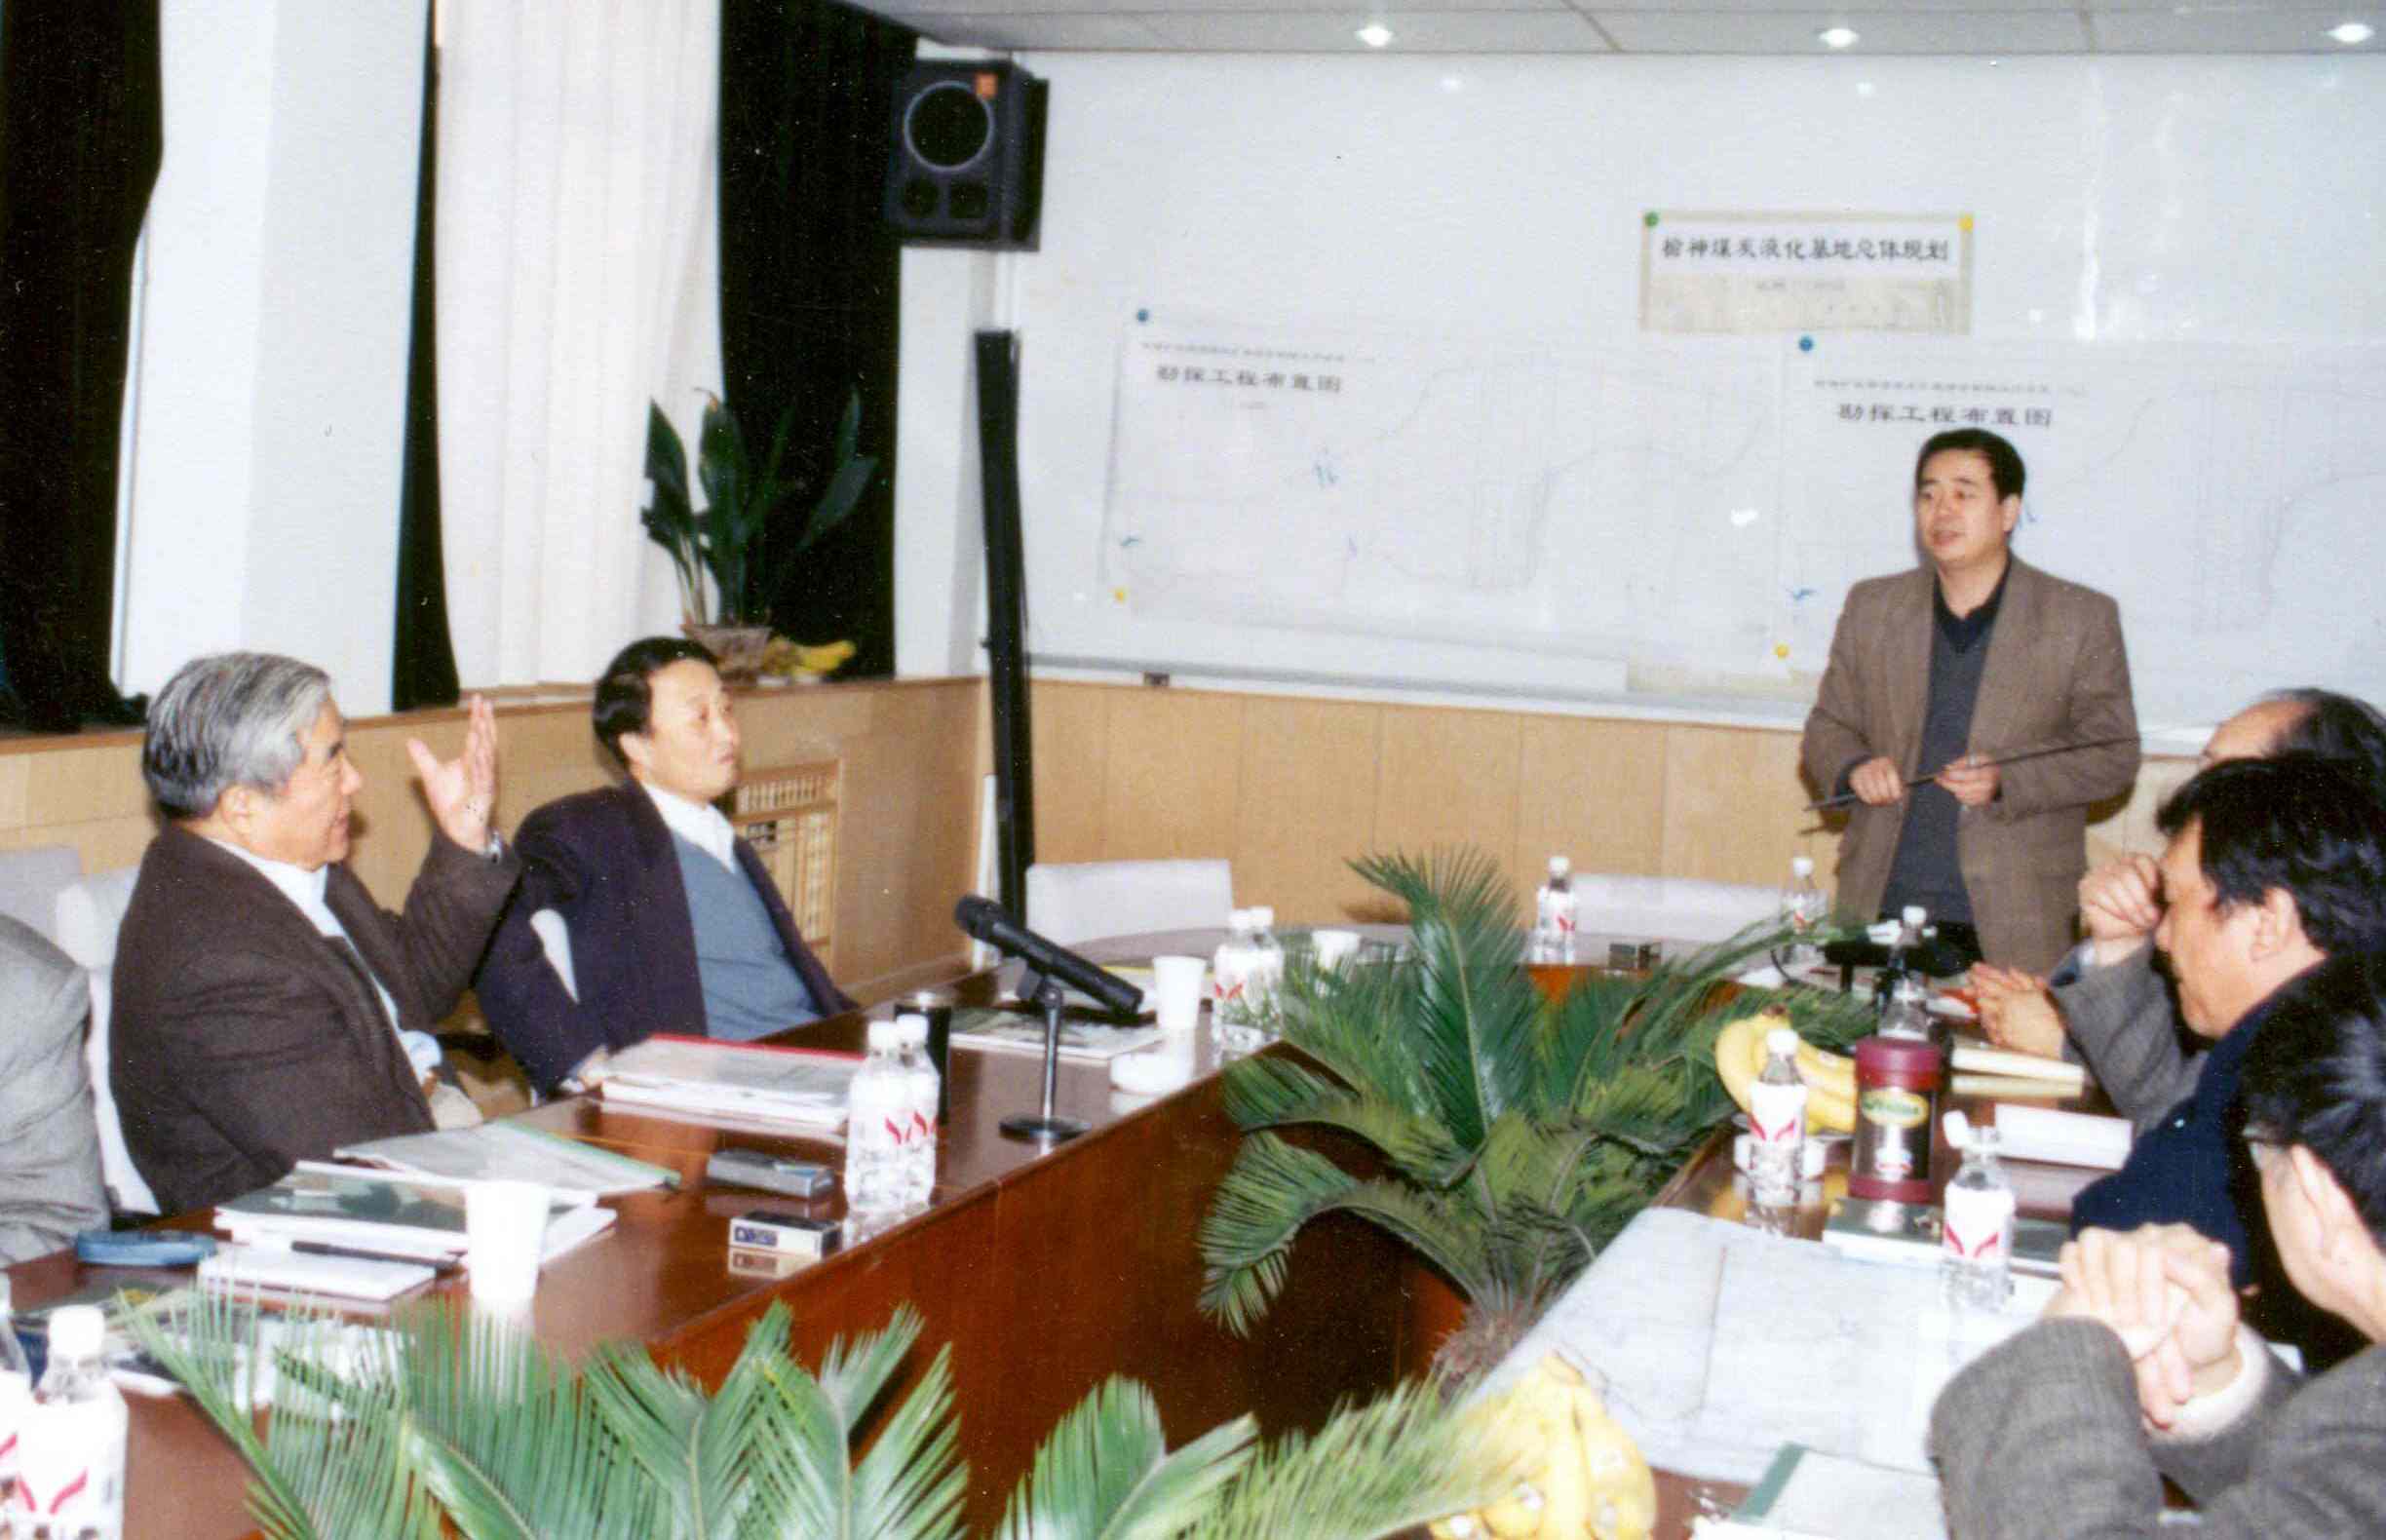 給程安東省長匯報陝西煤炭地質工作（2001）